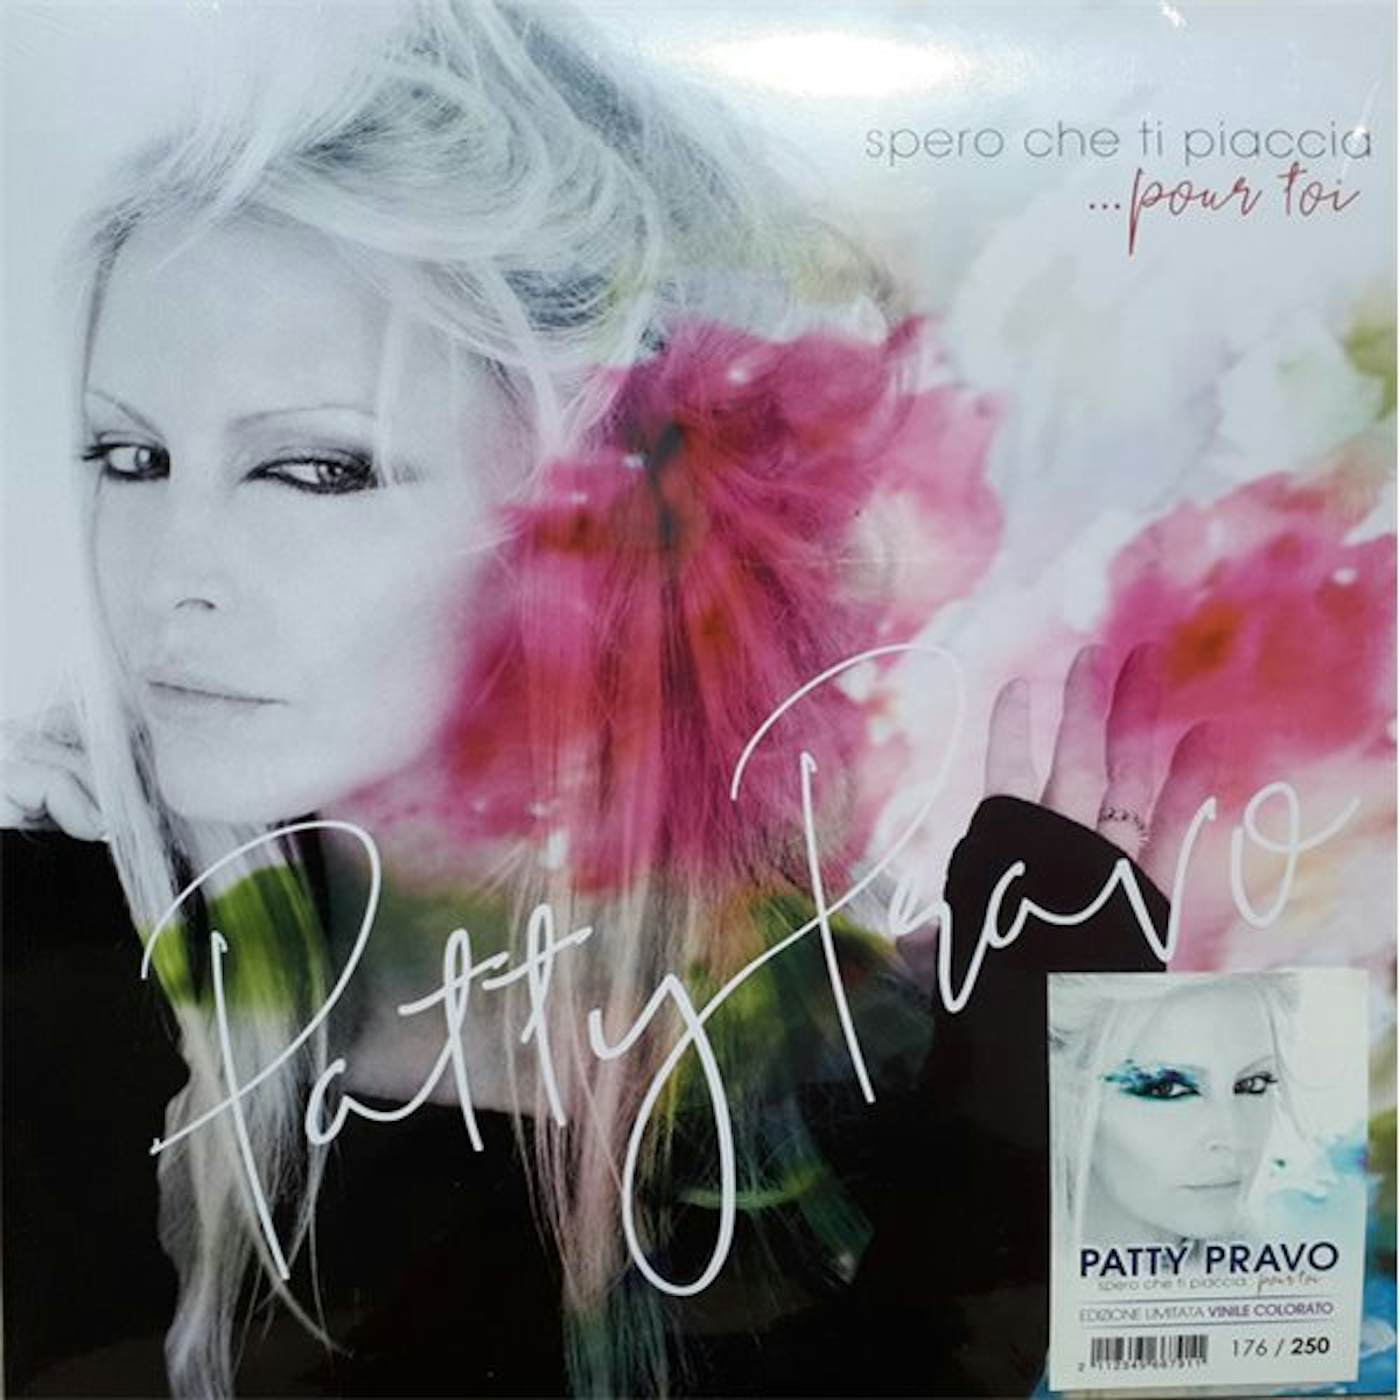 Patty Pravo SPERO CHE TI PIACCIA POUR TOI Vinyl Record